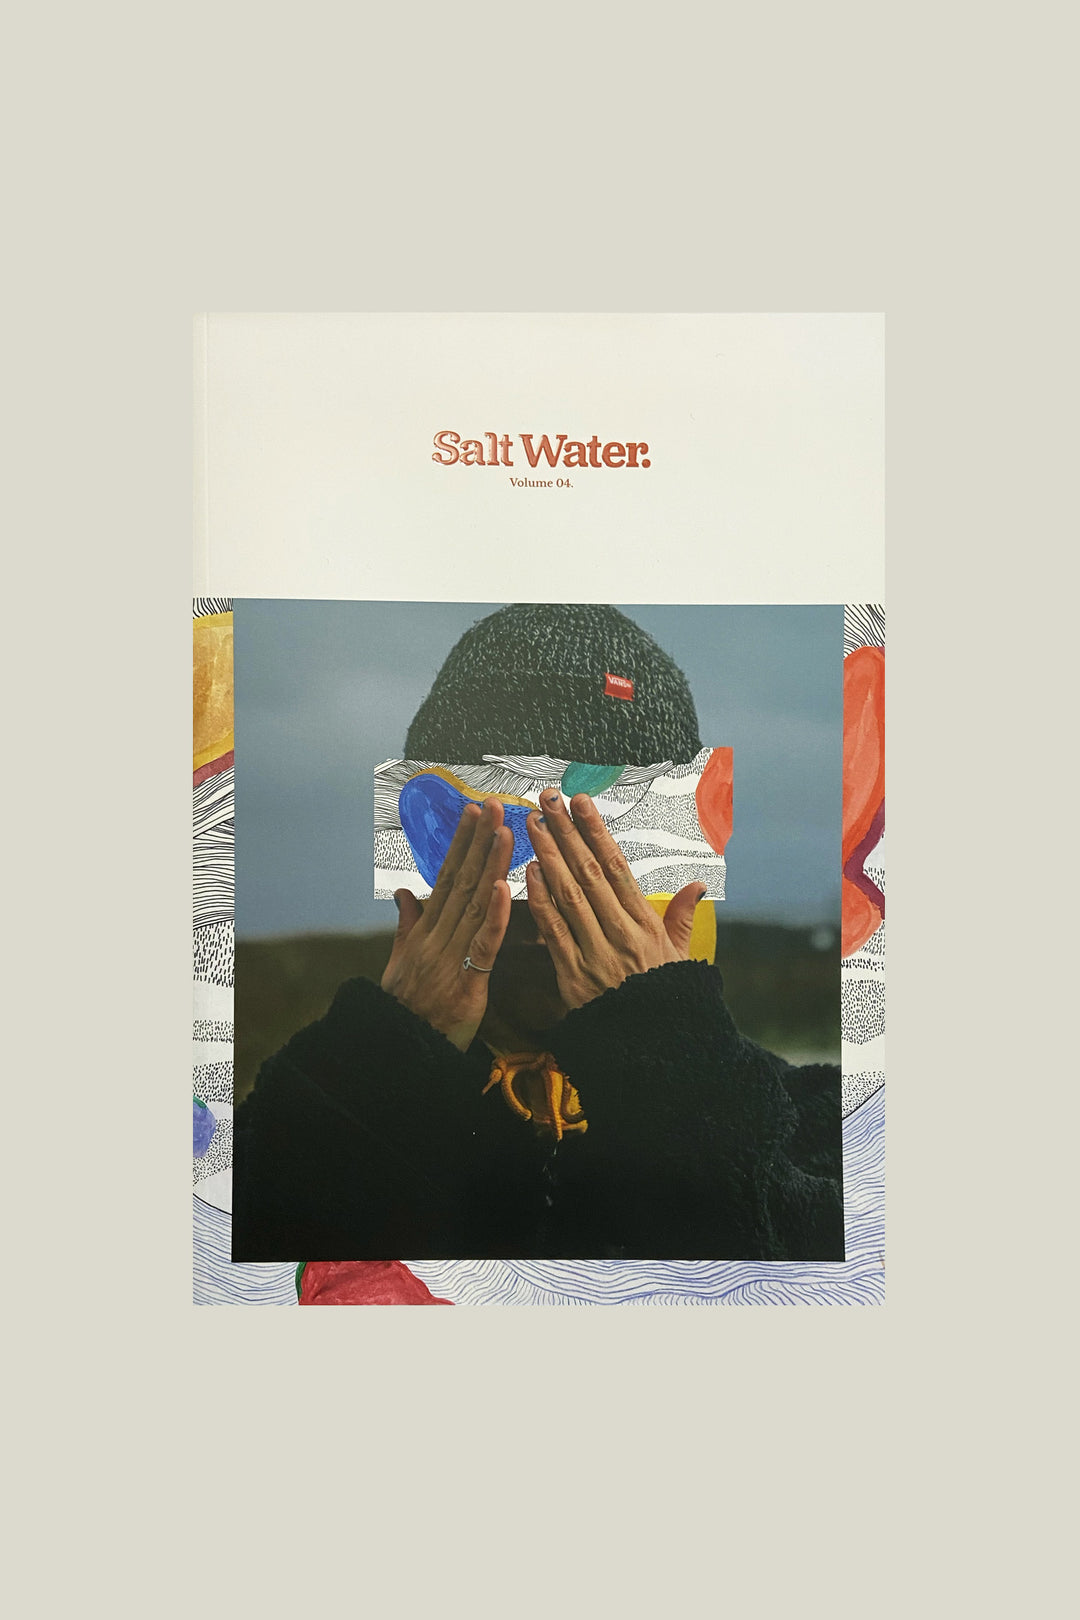 Salt water magazine Vol. 4